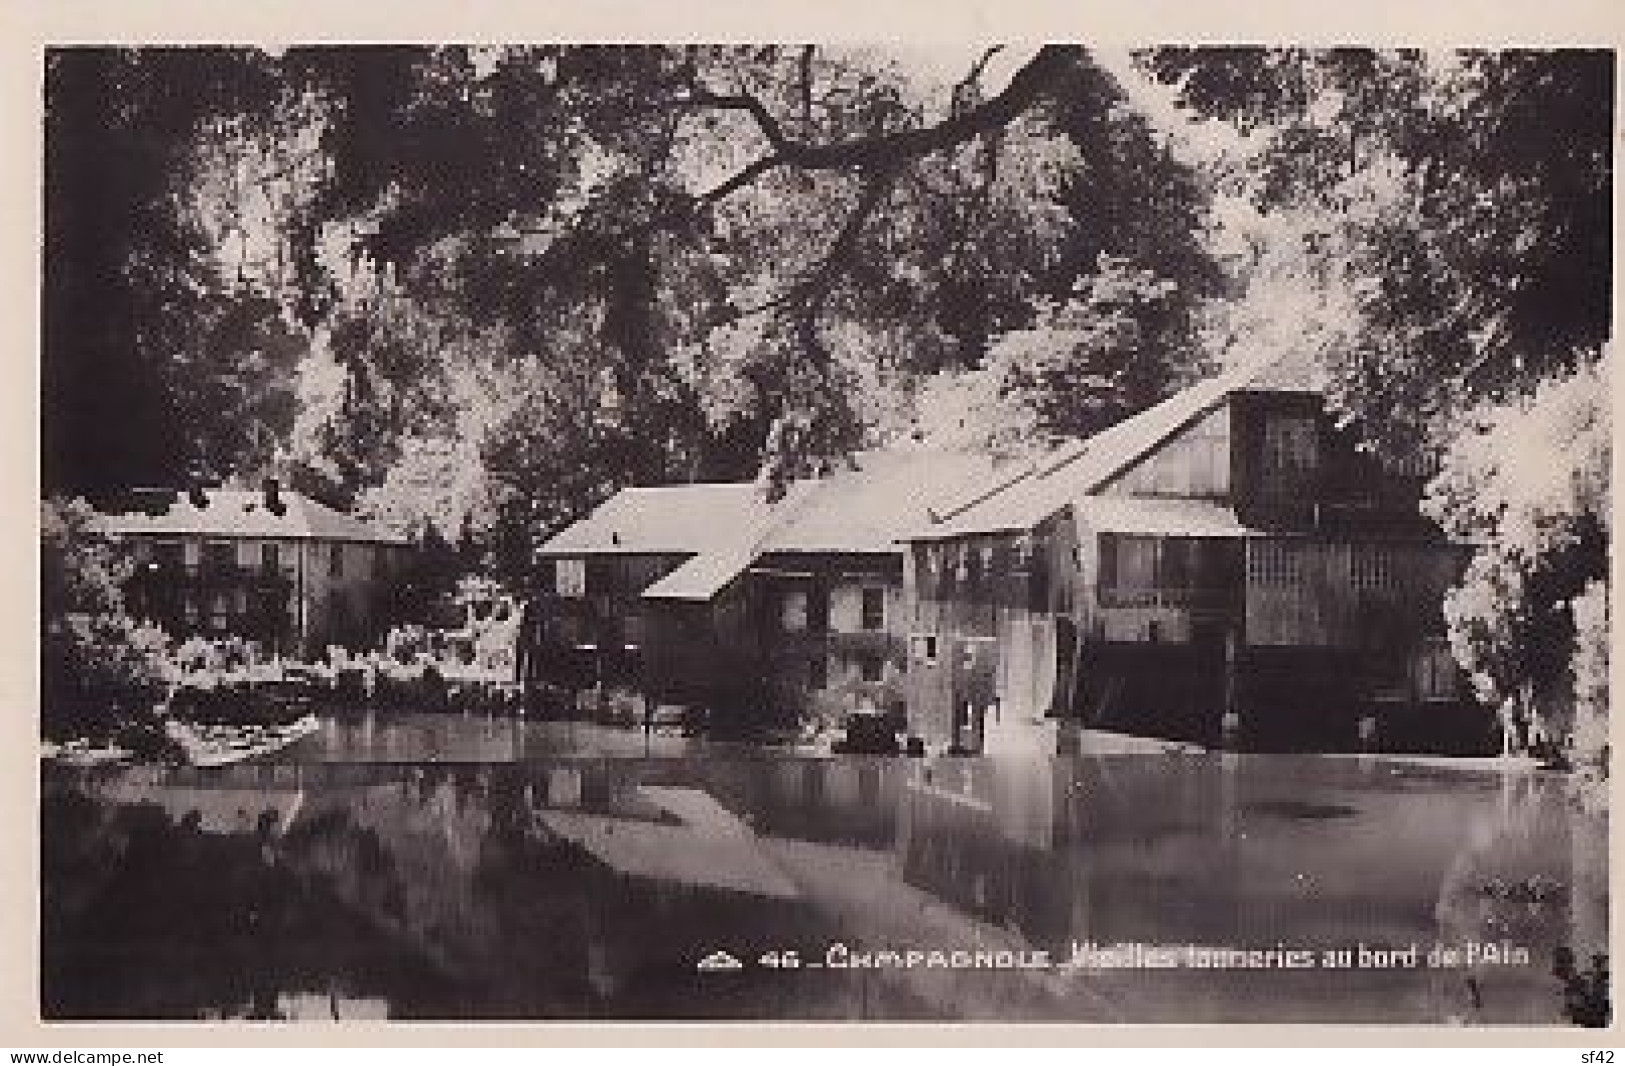 CHAMPAGNOLE               Vieilles Tanneries Au Bord De L Ain - Champagnole